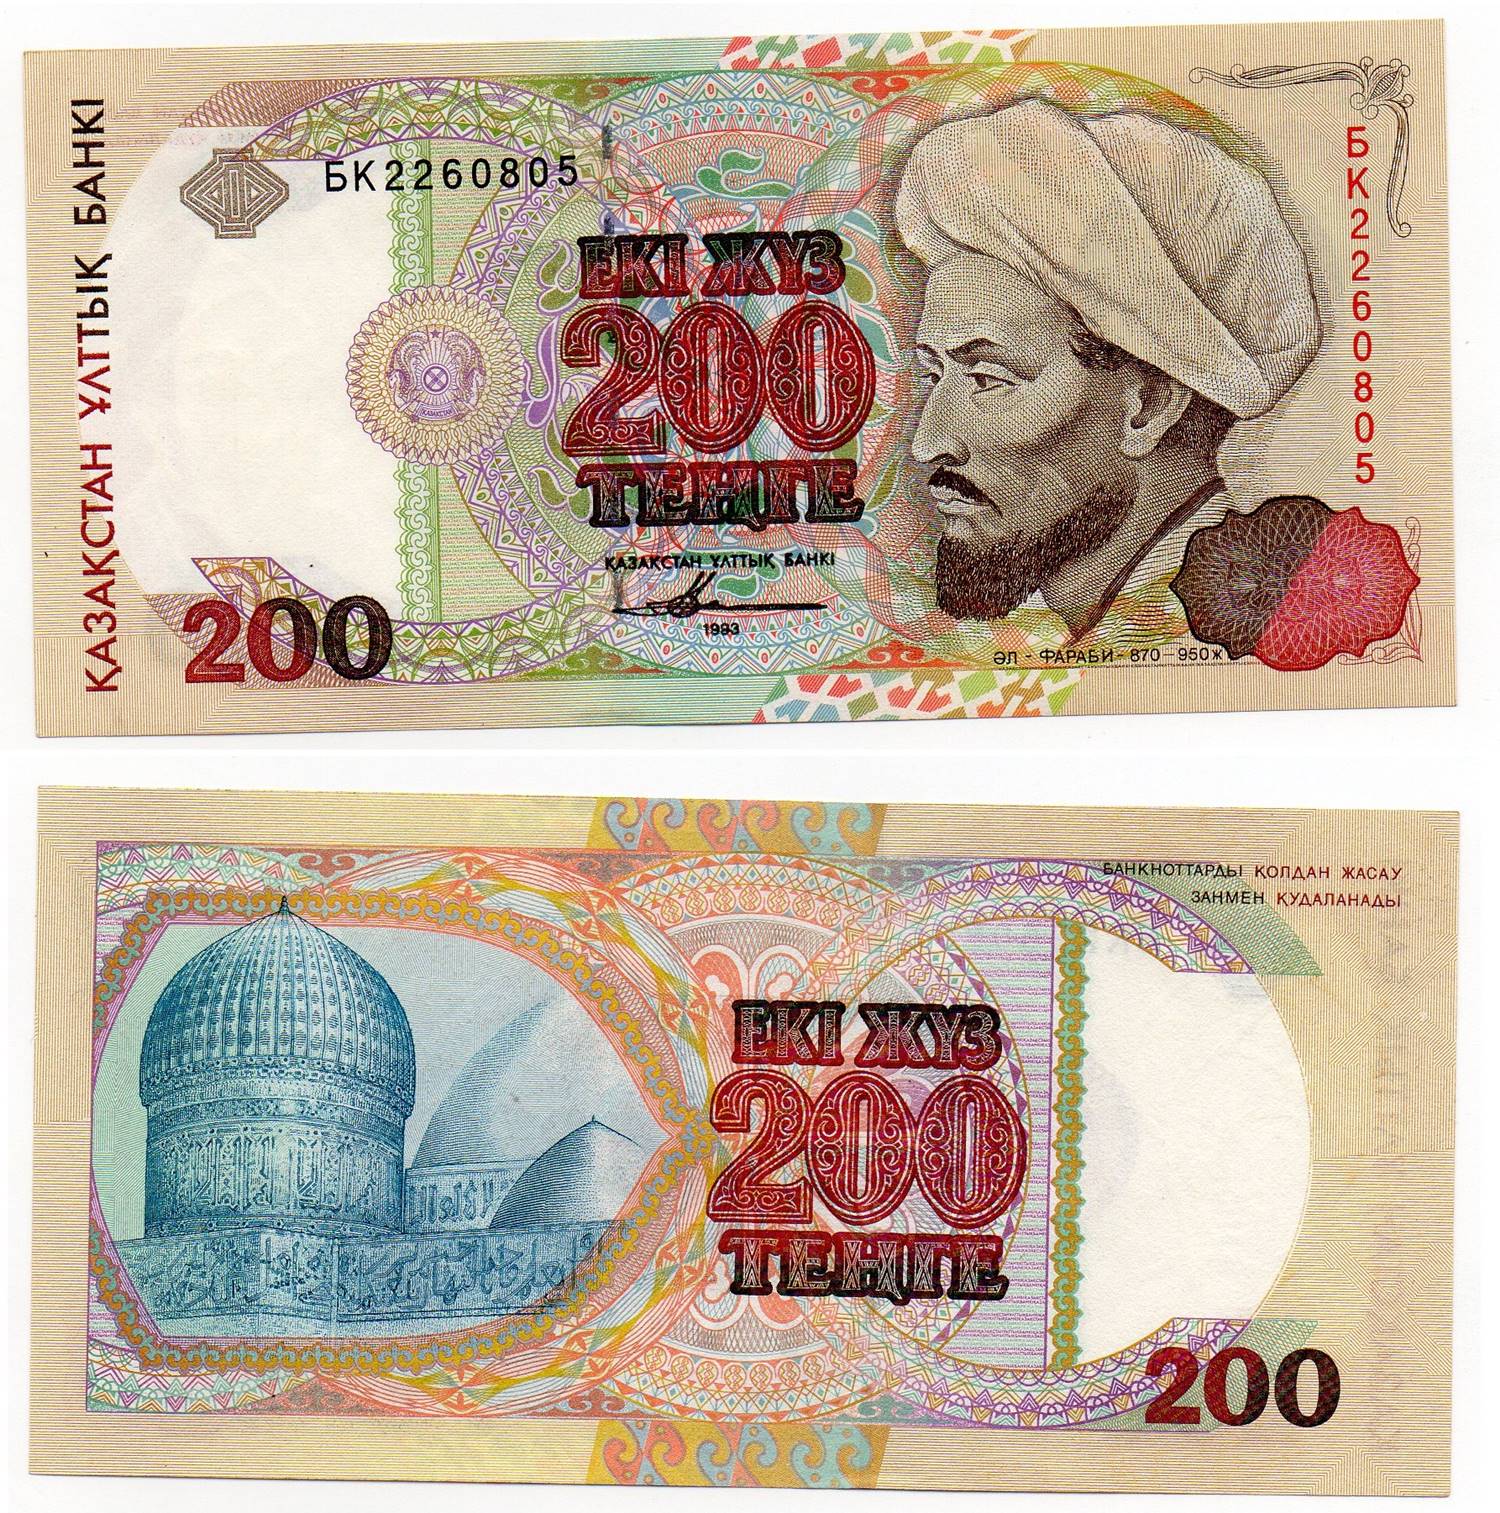 KAZAKHSTAN 200 Tenge 1999 P20a UNC Banknote 